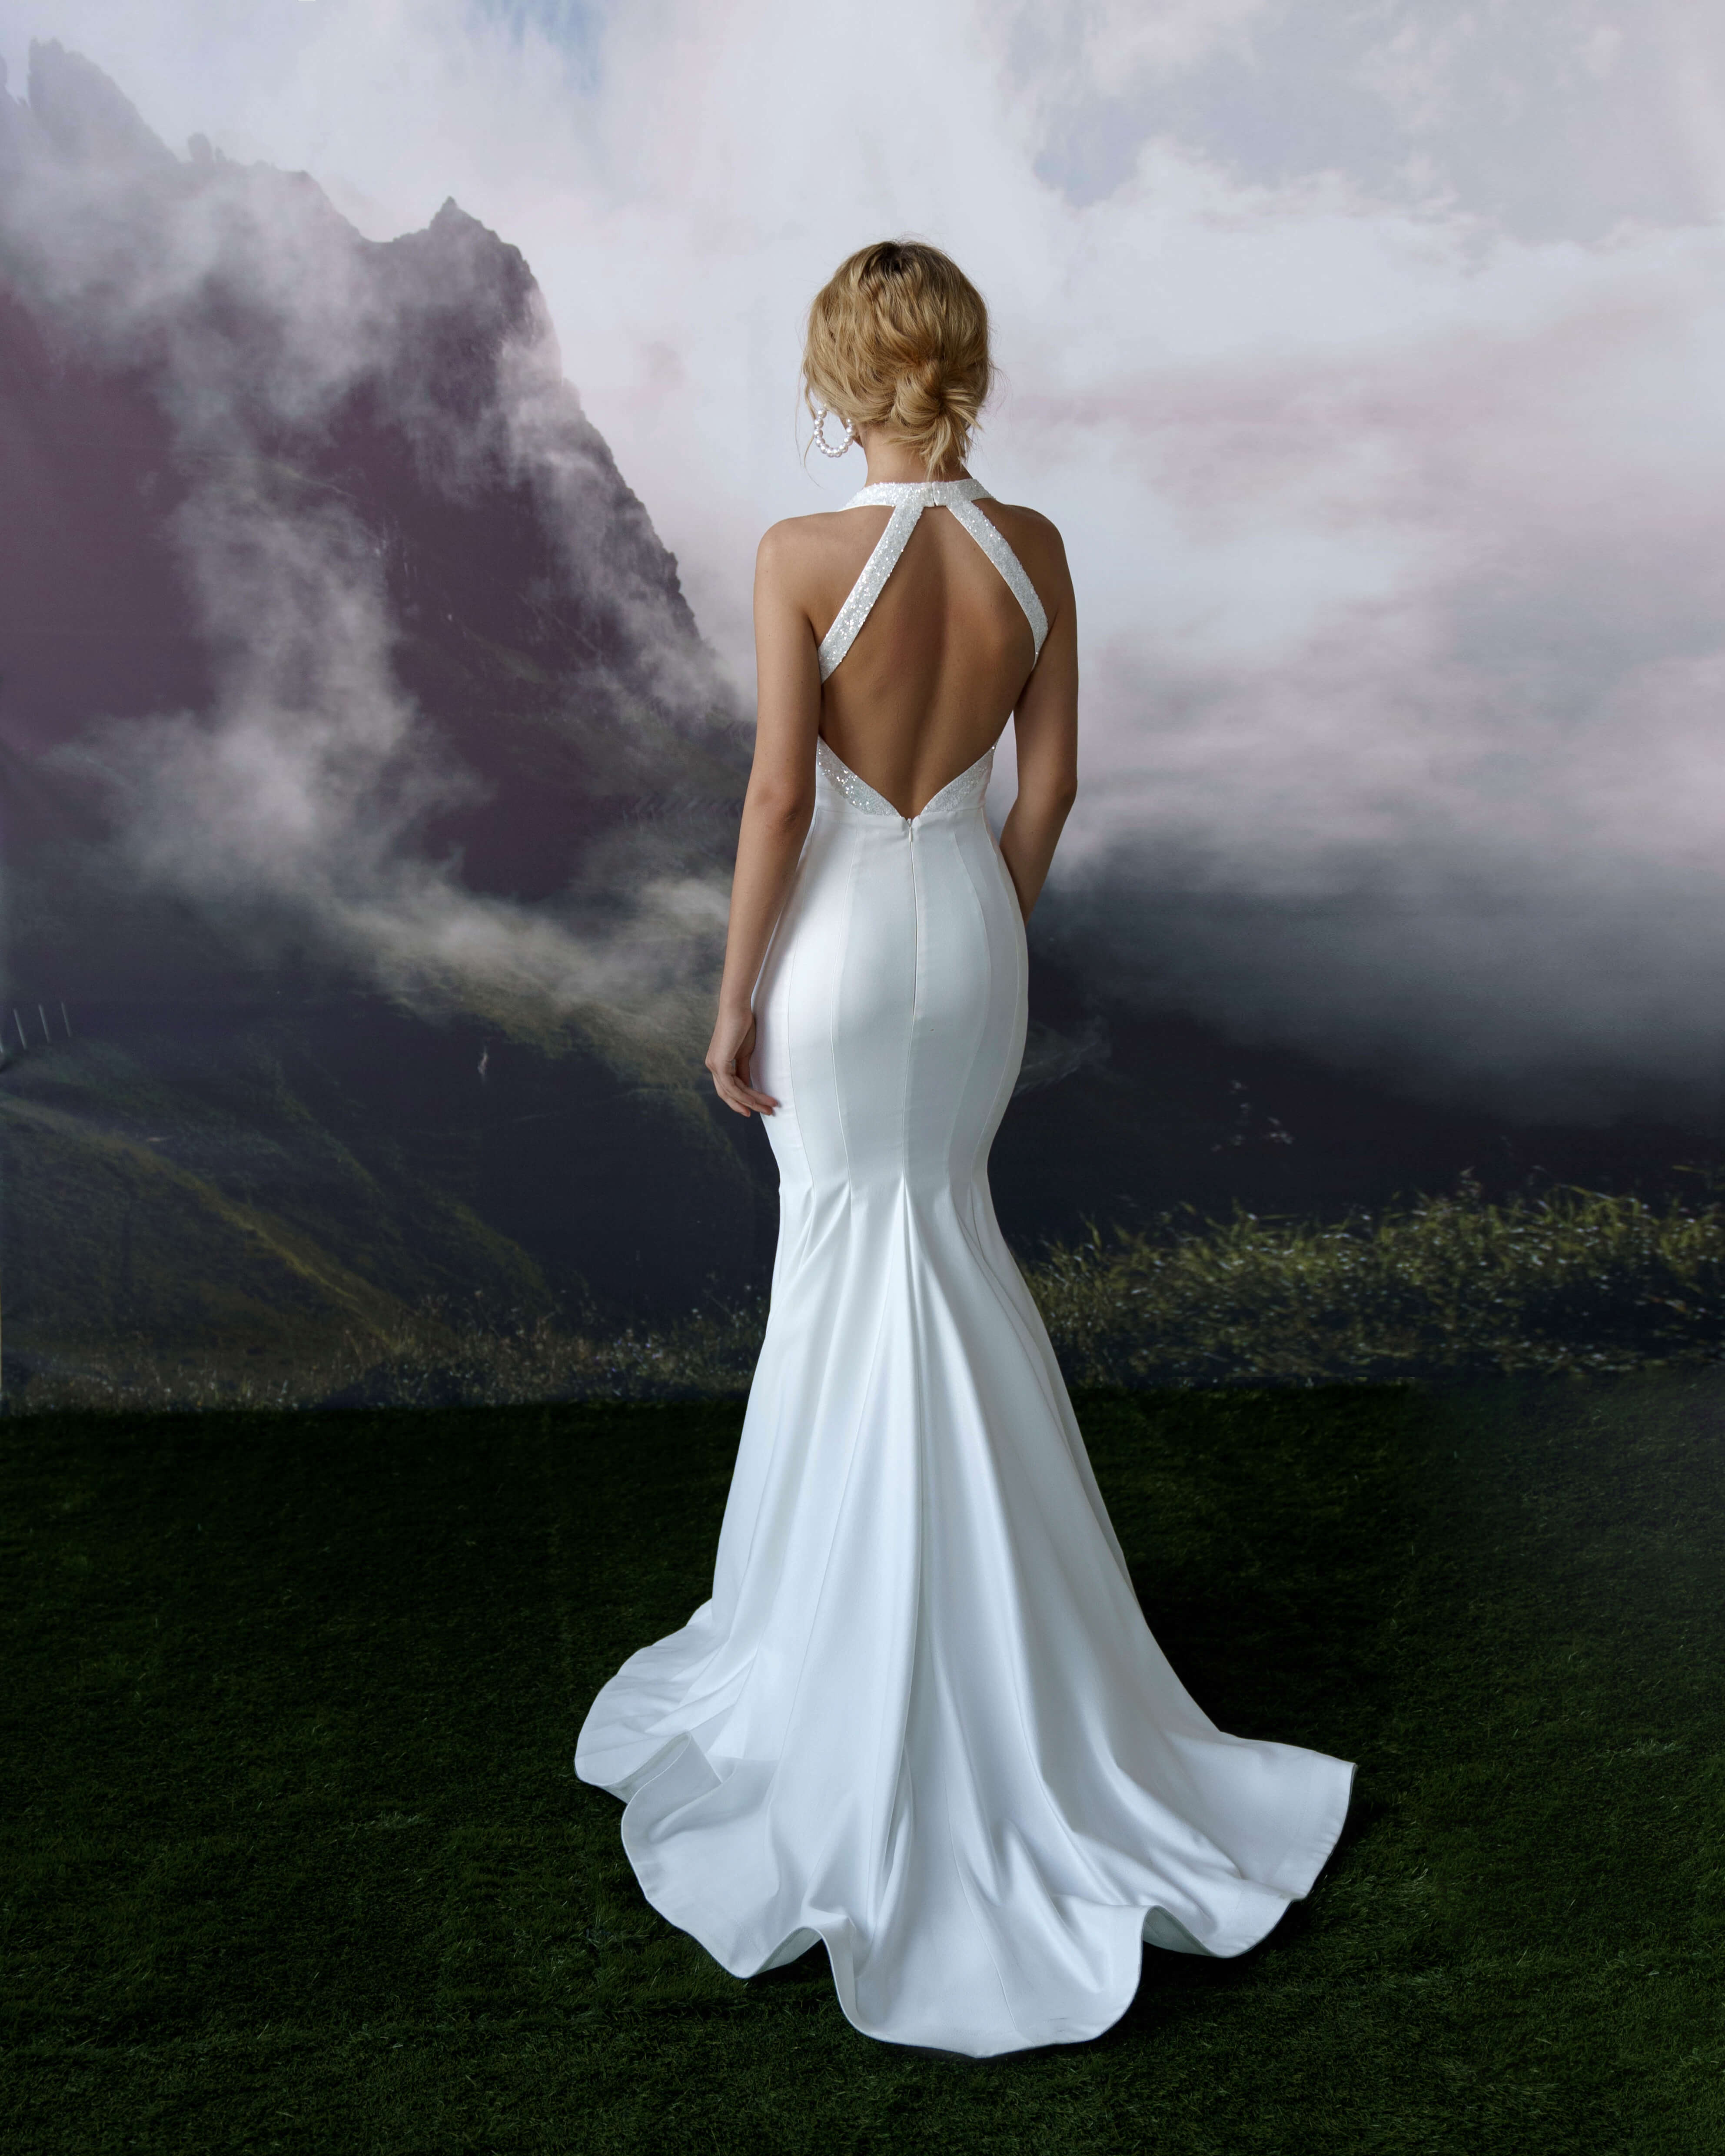 Купить свадебное платье «Ланер» Бламмо Биамо из коллекции Сказка 2022 года в салоне «Мэри Трюфель»